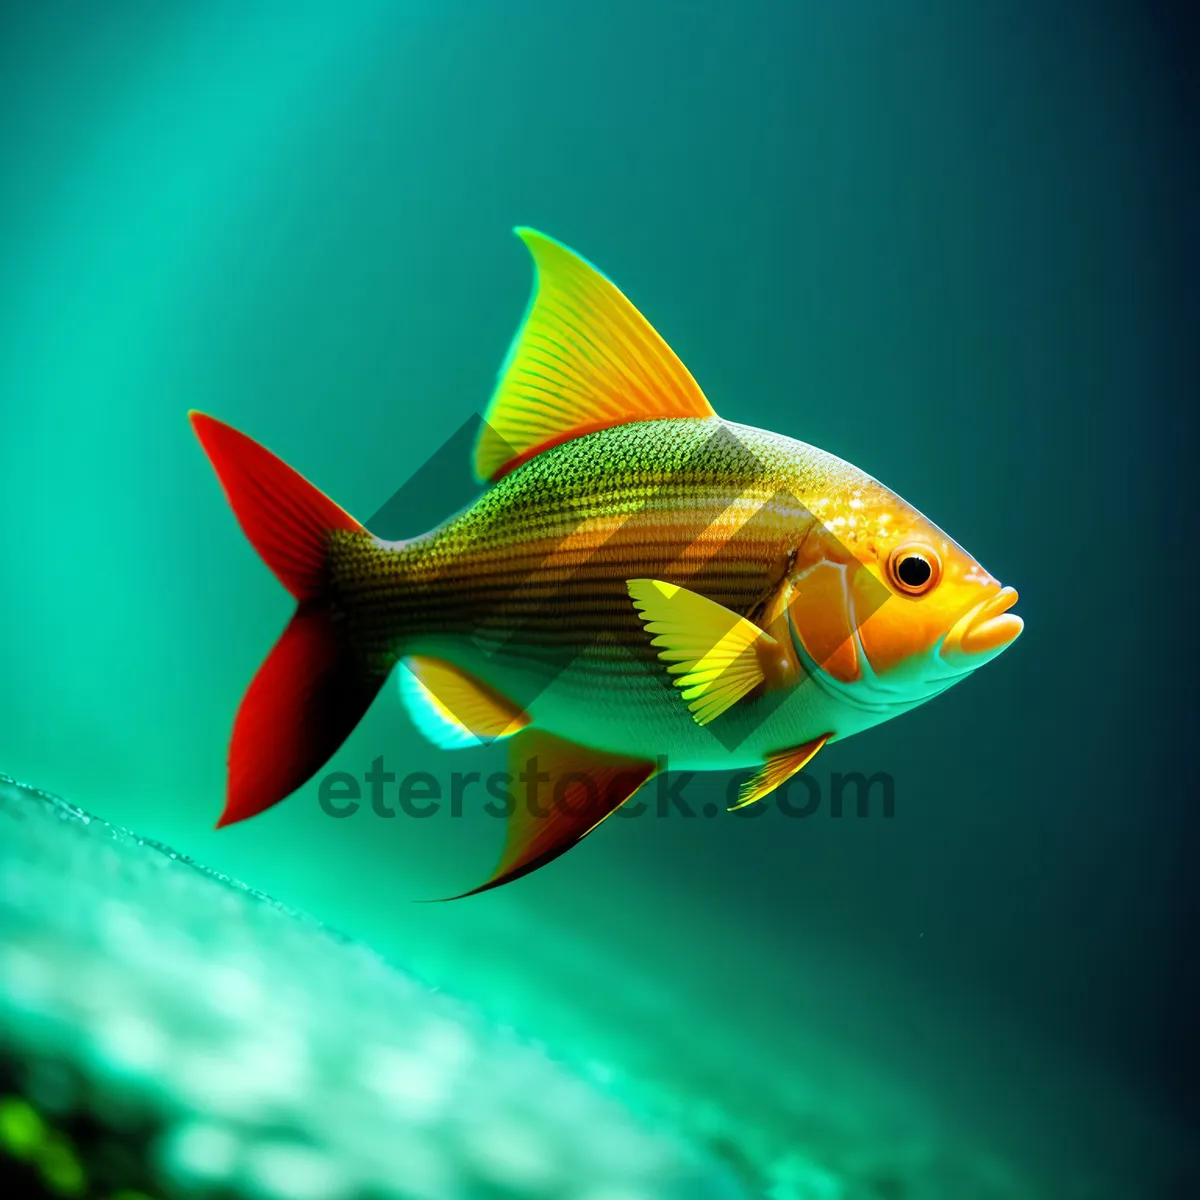 Picture of Golden Finned Aquatic Pet in Underwater Aquarium